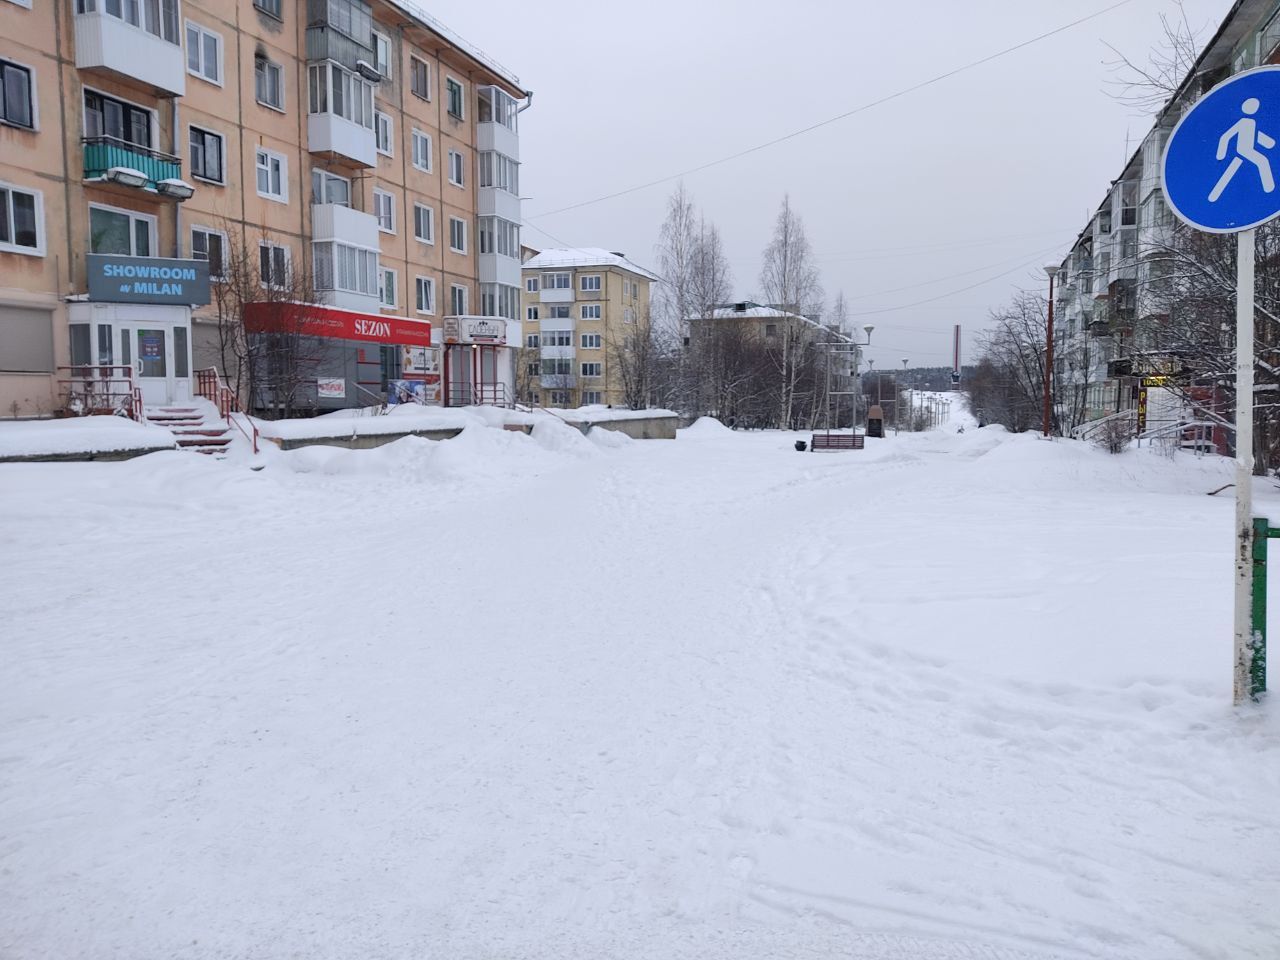 Жительница Североуральска Татьяна недовольна, что автомобили заезжают на Бульвар Моисеева